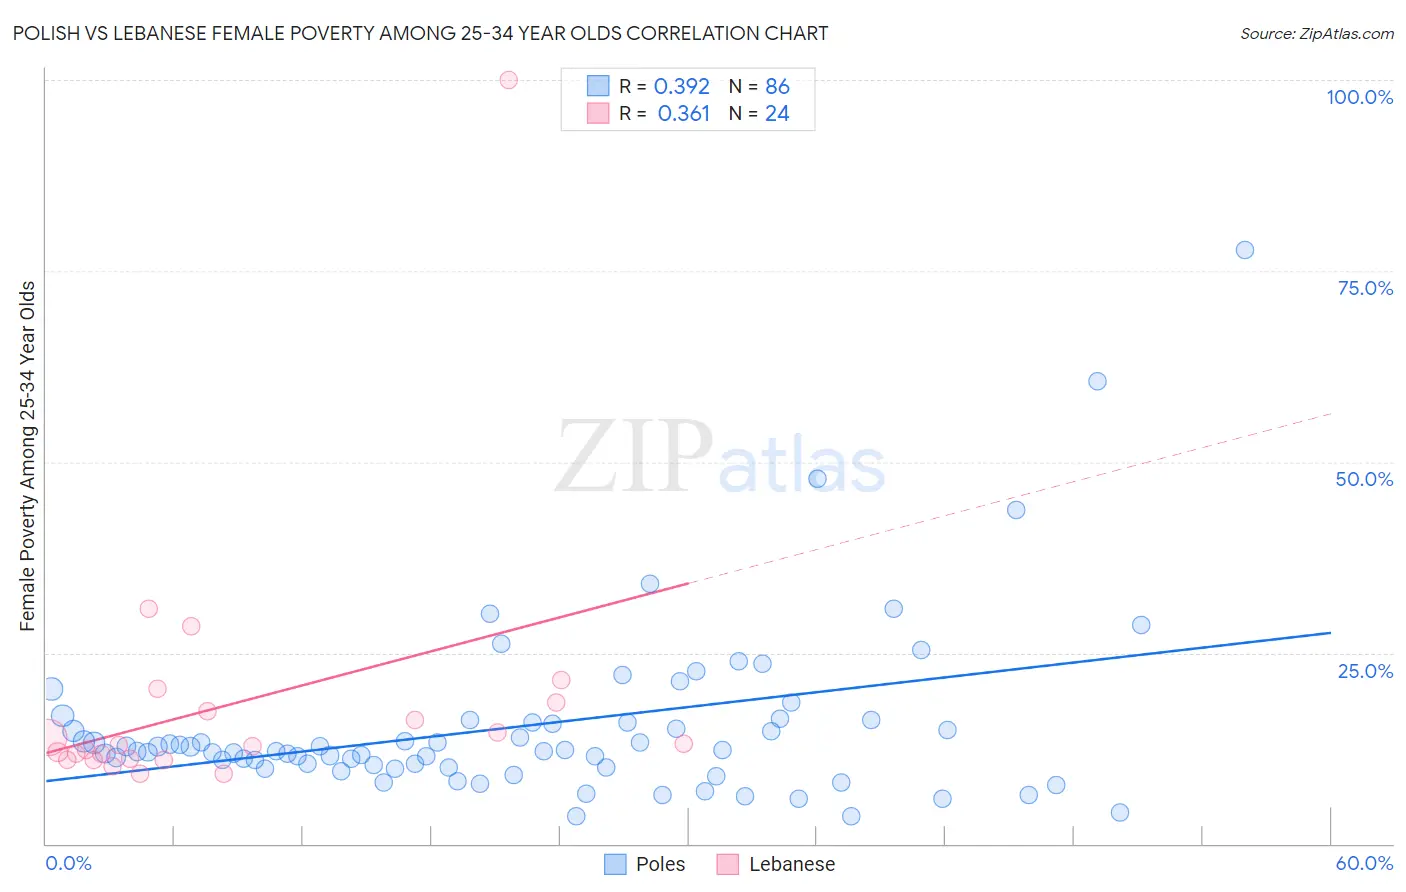 Polish vs Lebanese Female Poverty Among 25-34 Year Olds